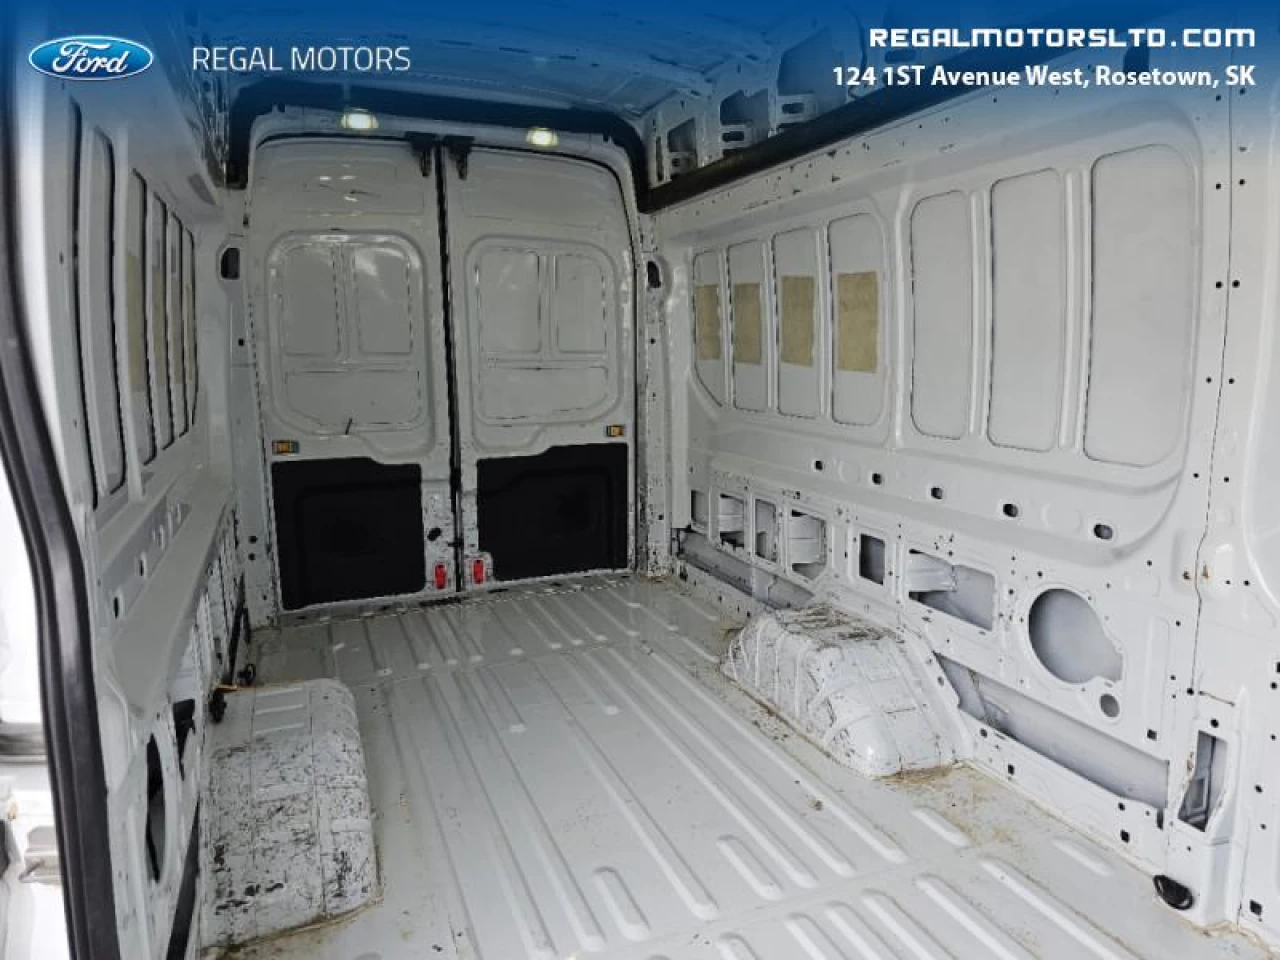 2016 Ford Transit Cargo Van TRANSIT 350 HD DRW VAN Main Image